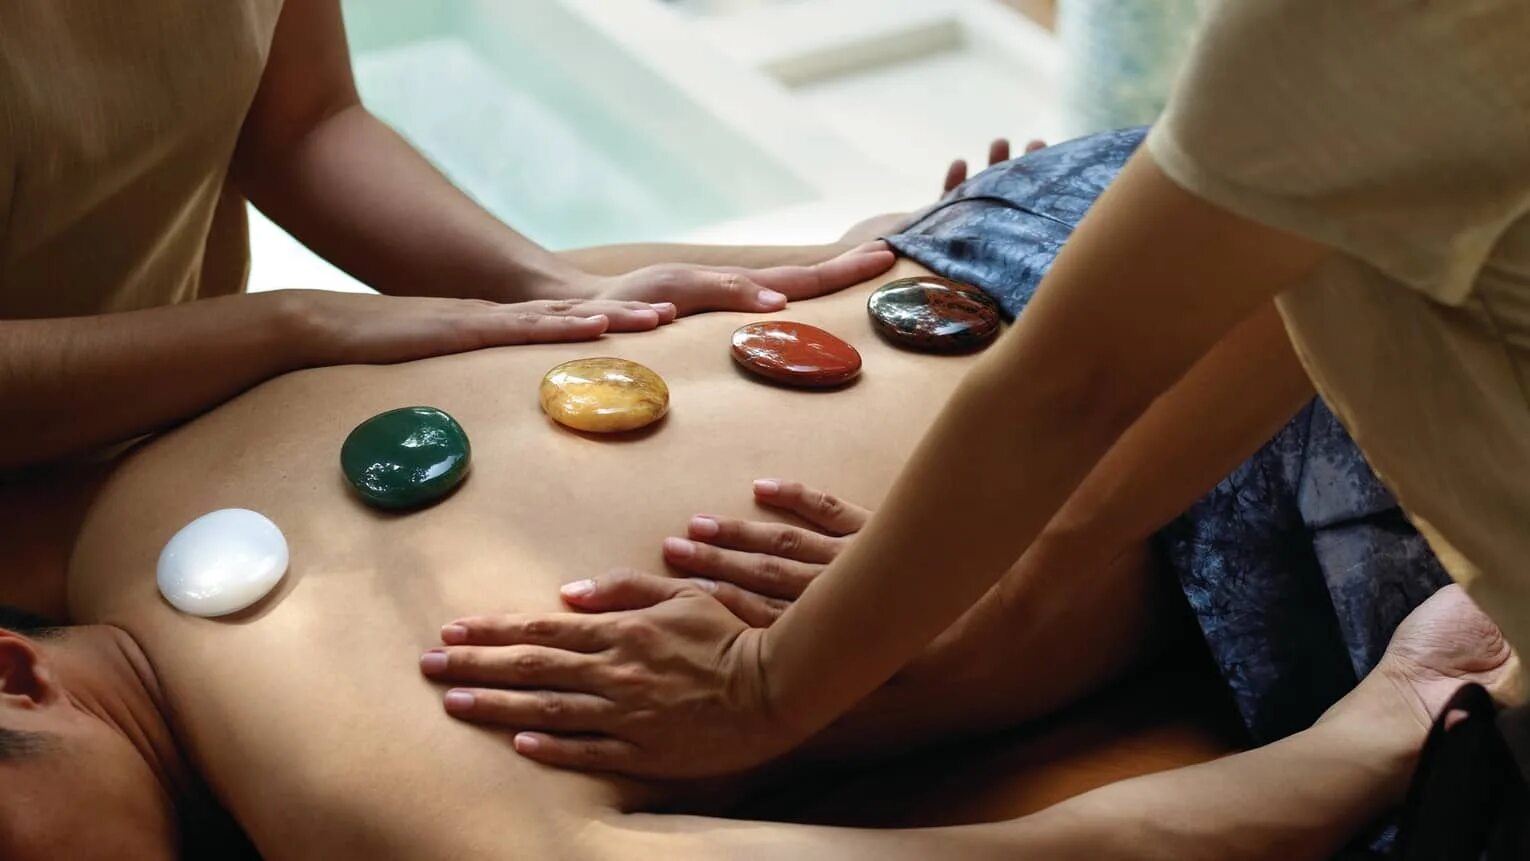 Литотерапия (камнелечение). Камни массажные. Массаж камнями. Массаж драгоценными камнями. Go massage